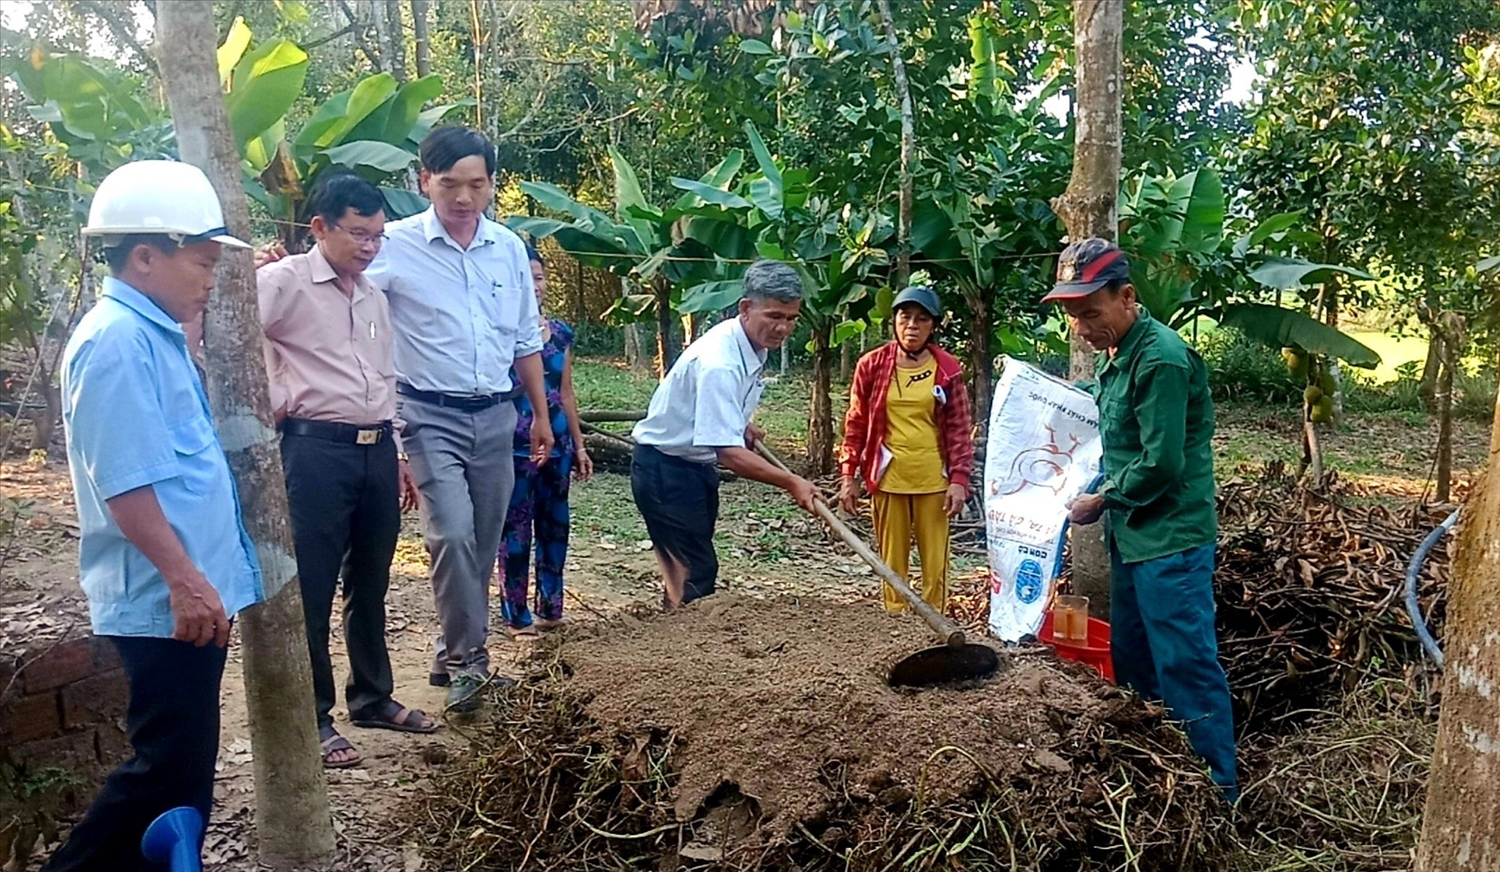 Cán bộ kỹ thuật nông nghiệp huyện Nông Sơn và khuyến nông viên cơ sở hướng dẫn nông dân chế biến phụ phẩm nông nghiệp thành phân hữu cơ bón cho cây trồng. Ảnh: M.N